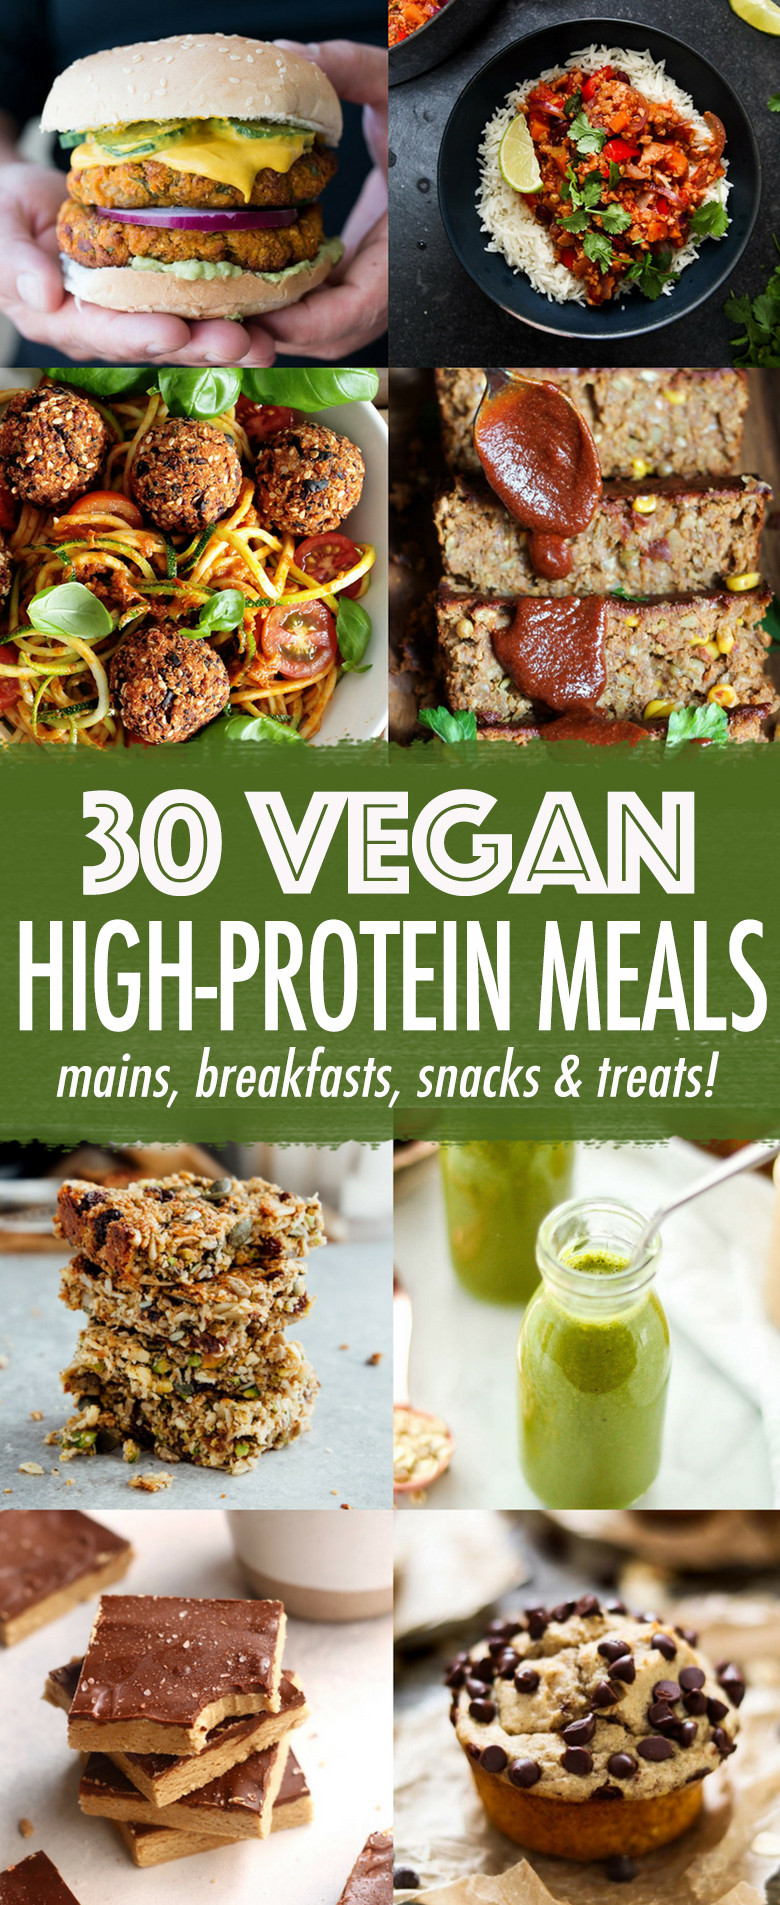 High Protein Snacks Recipes
 30 High protein Vegan Meals Wallflower Kitchen